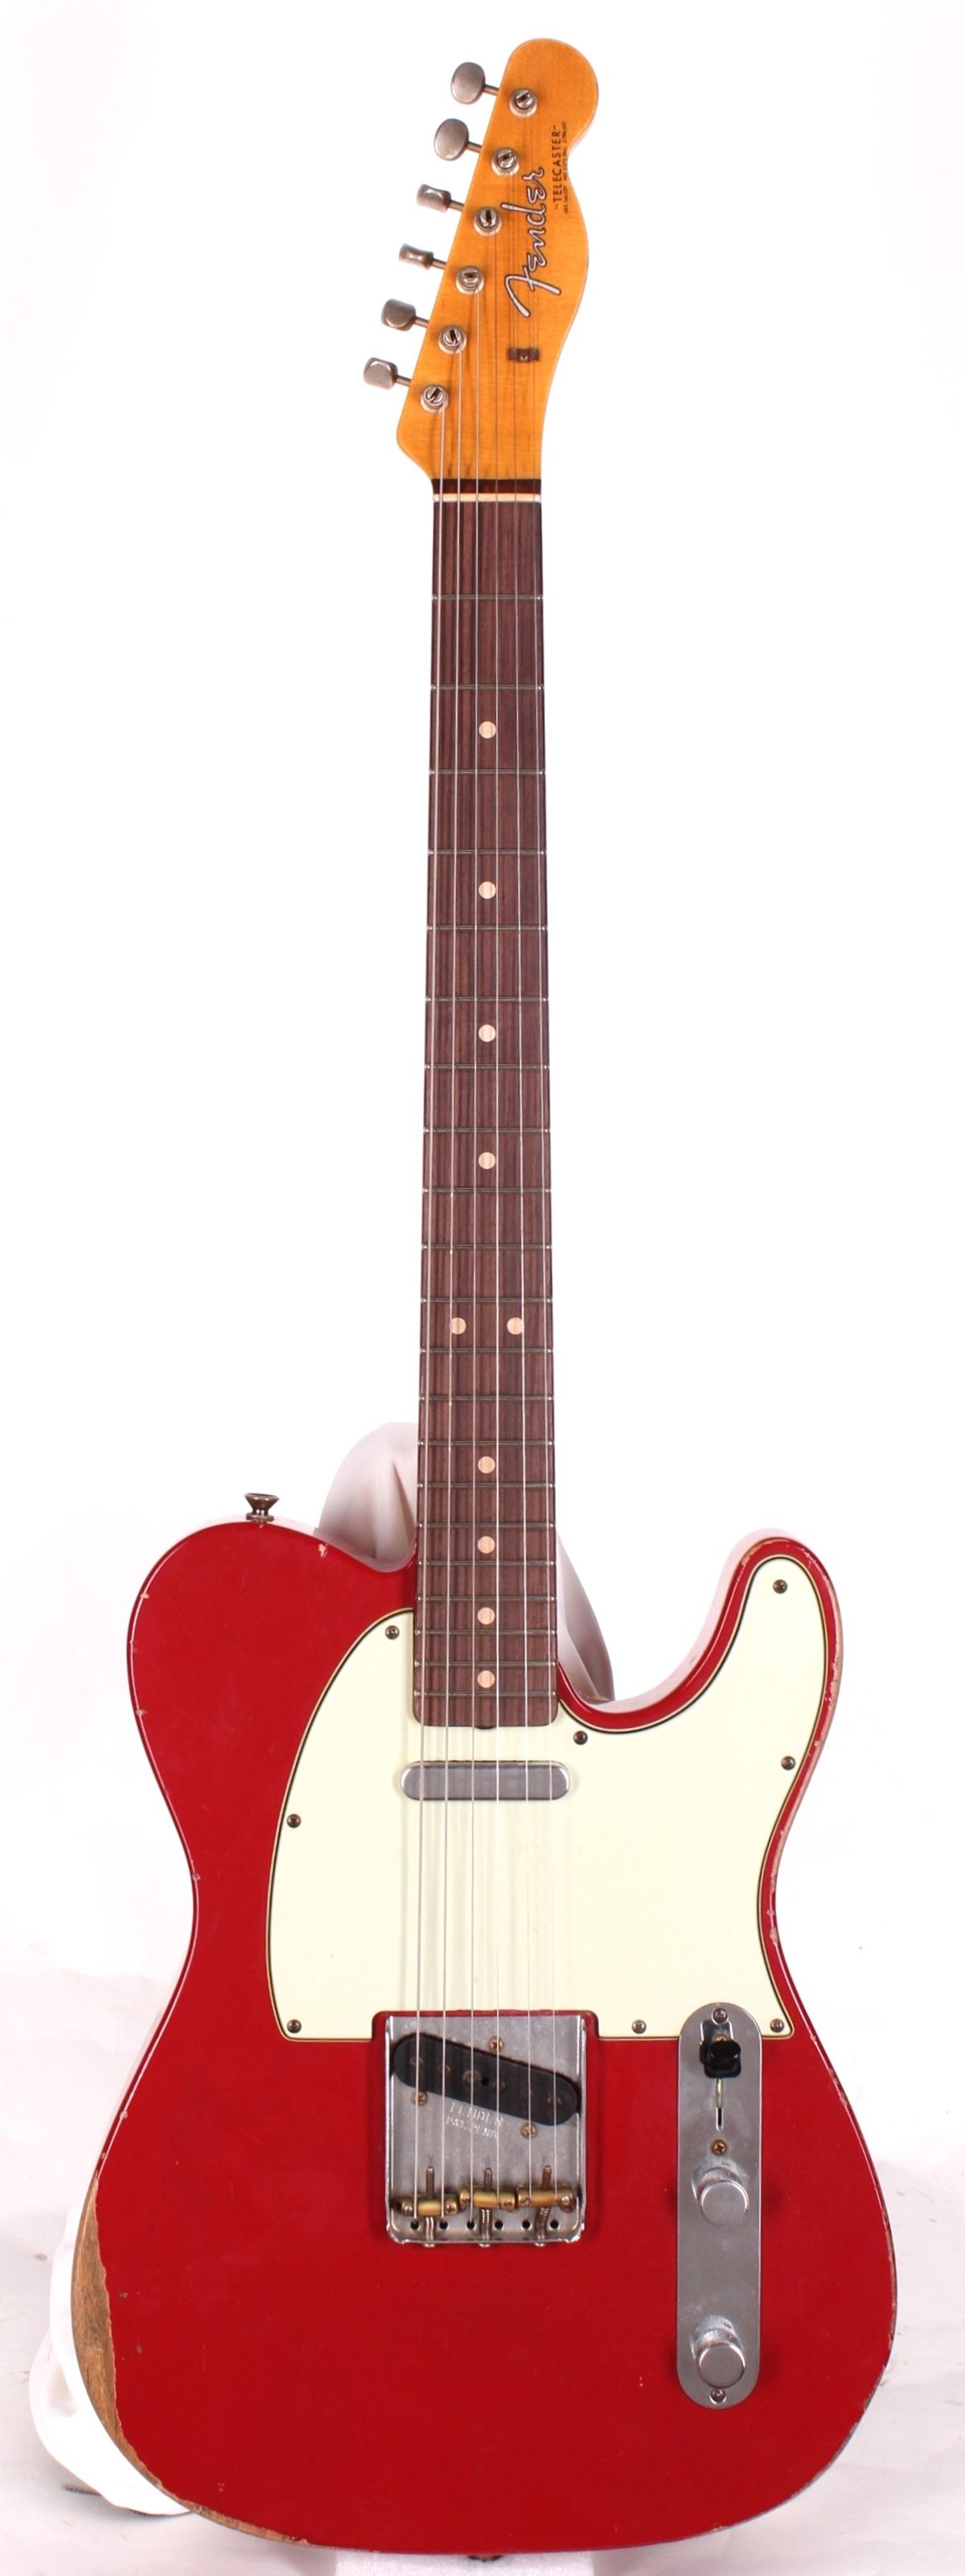 2009 Fender CS '62 Telecaster Relic Ltd. Dakota Red